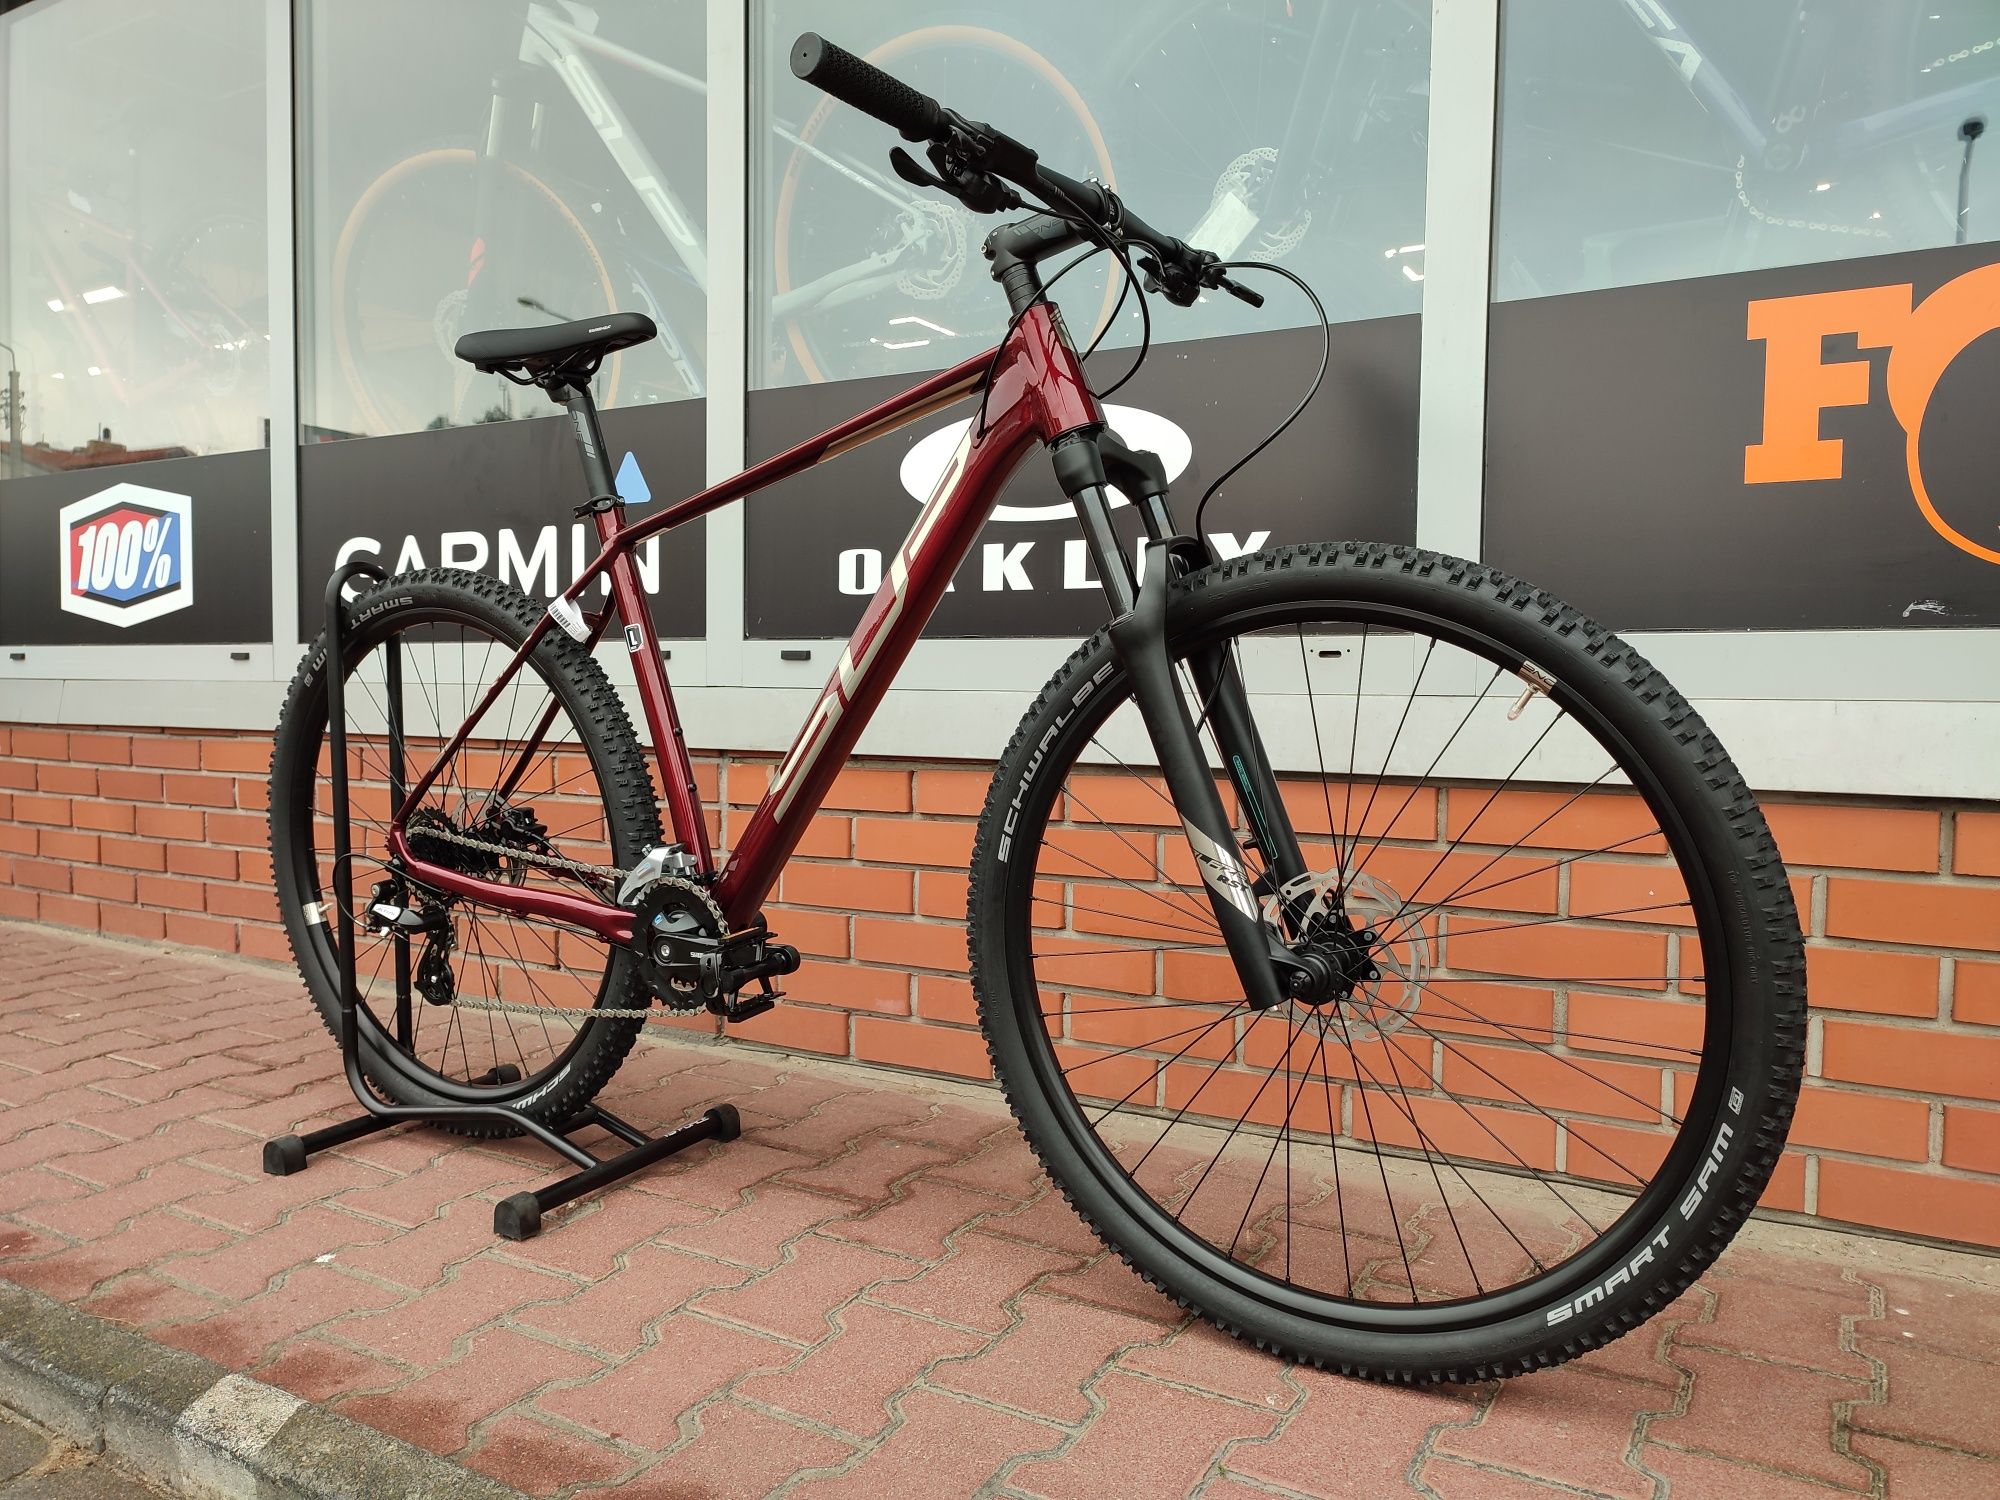 Nowy rower Superior XC819 Mtb, górski, Poznań,FV,gwarancja